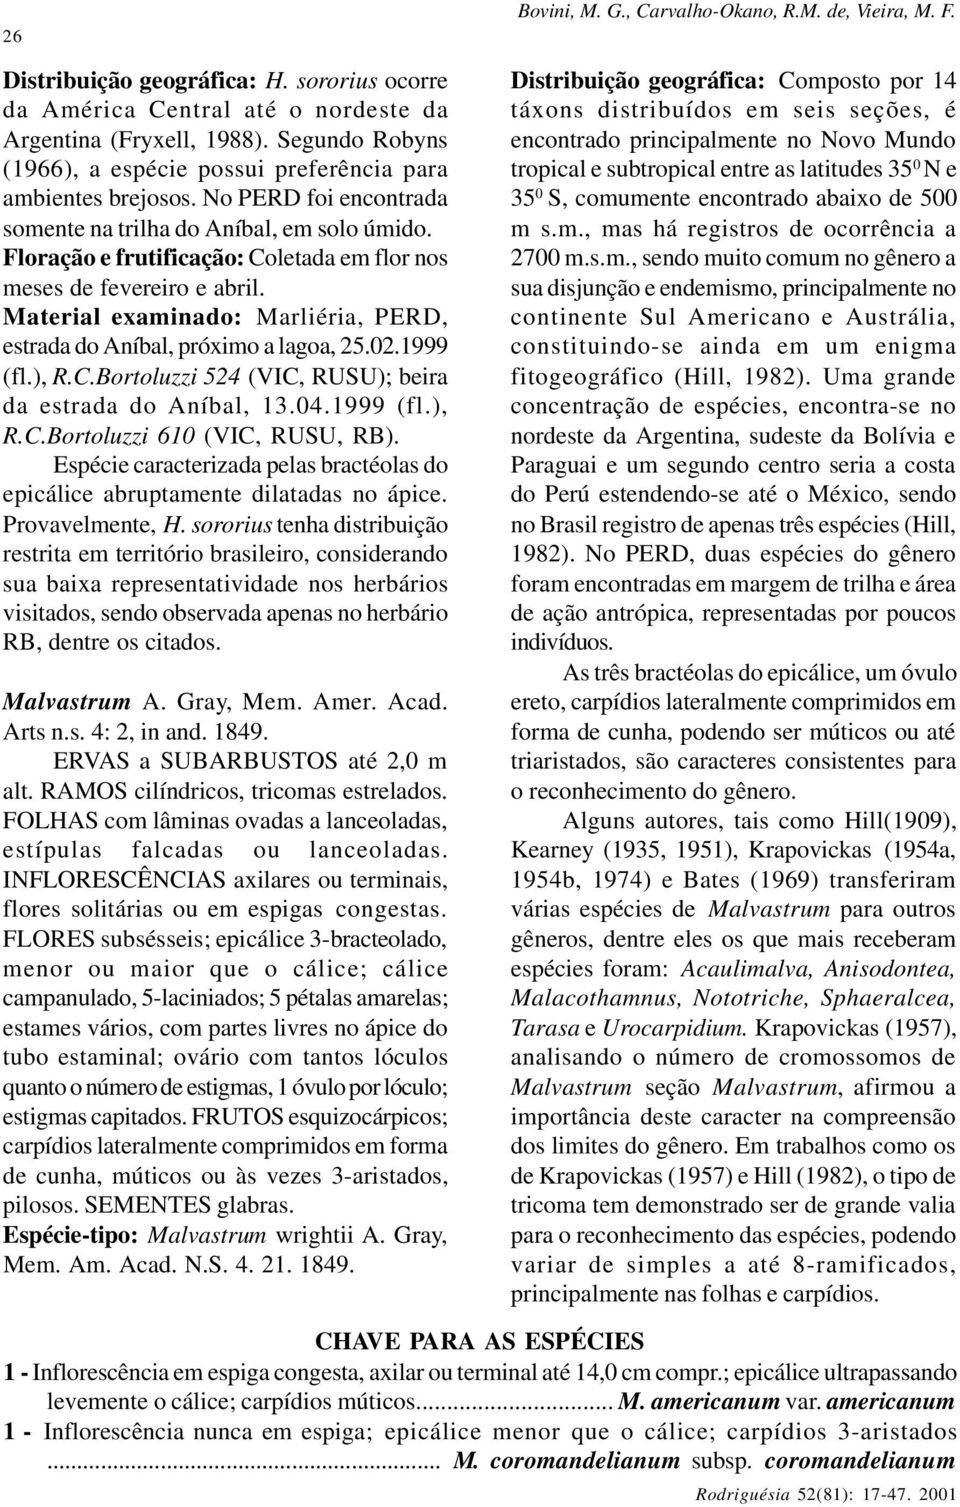 Material examinado: Marliéria, PERD, estrada do Aníbal, próximo a lagoa, 25.02.1999 (fl.), R.C.Bortoluzzi 524 (VIC, RUSU); beira da estrada do Aníbal, 13.04.1999 (fl.), R.C.Bortoluzzi 610 (VIC, RUSU, RB).